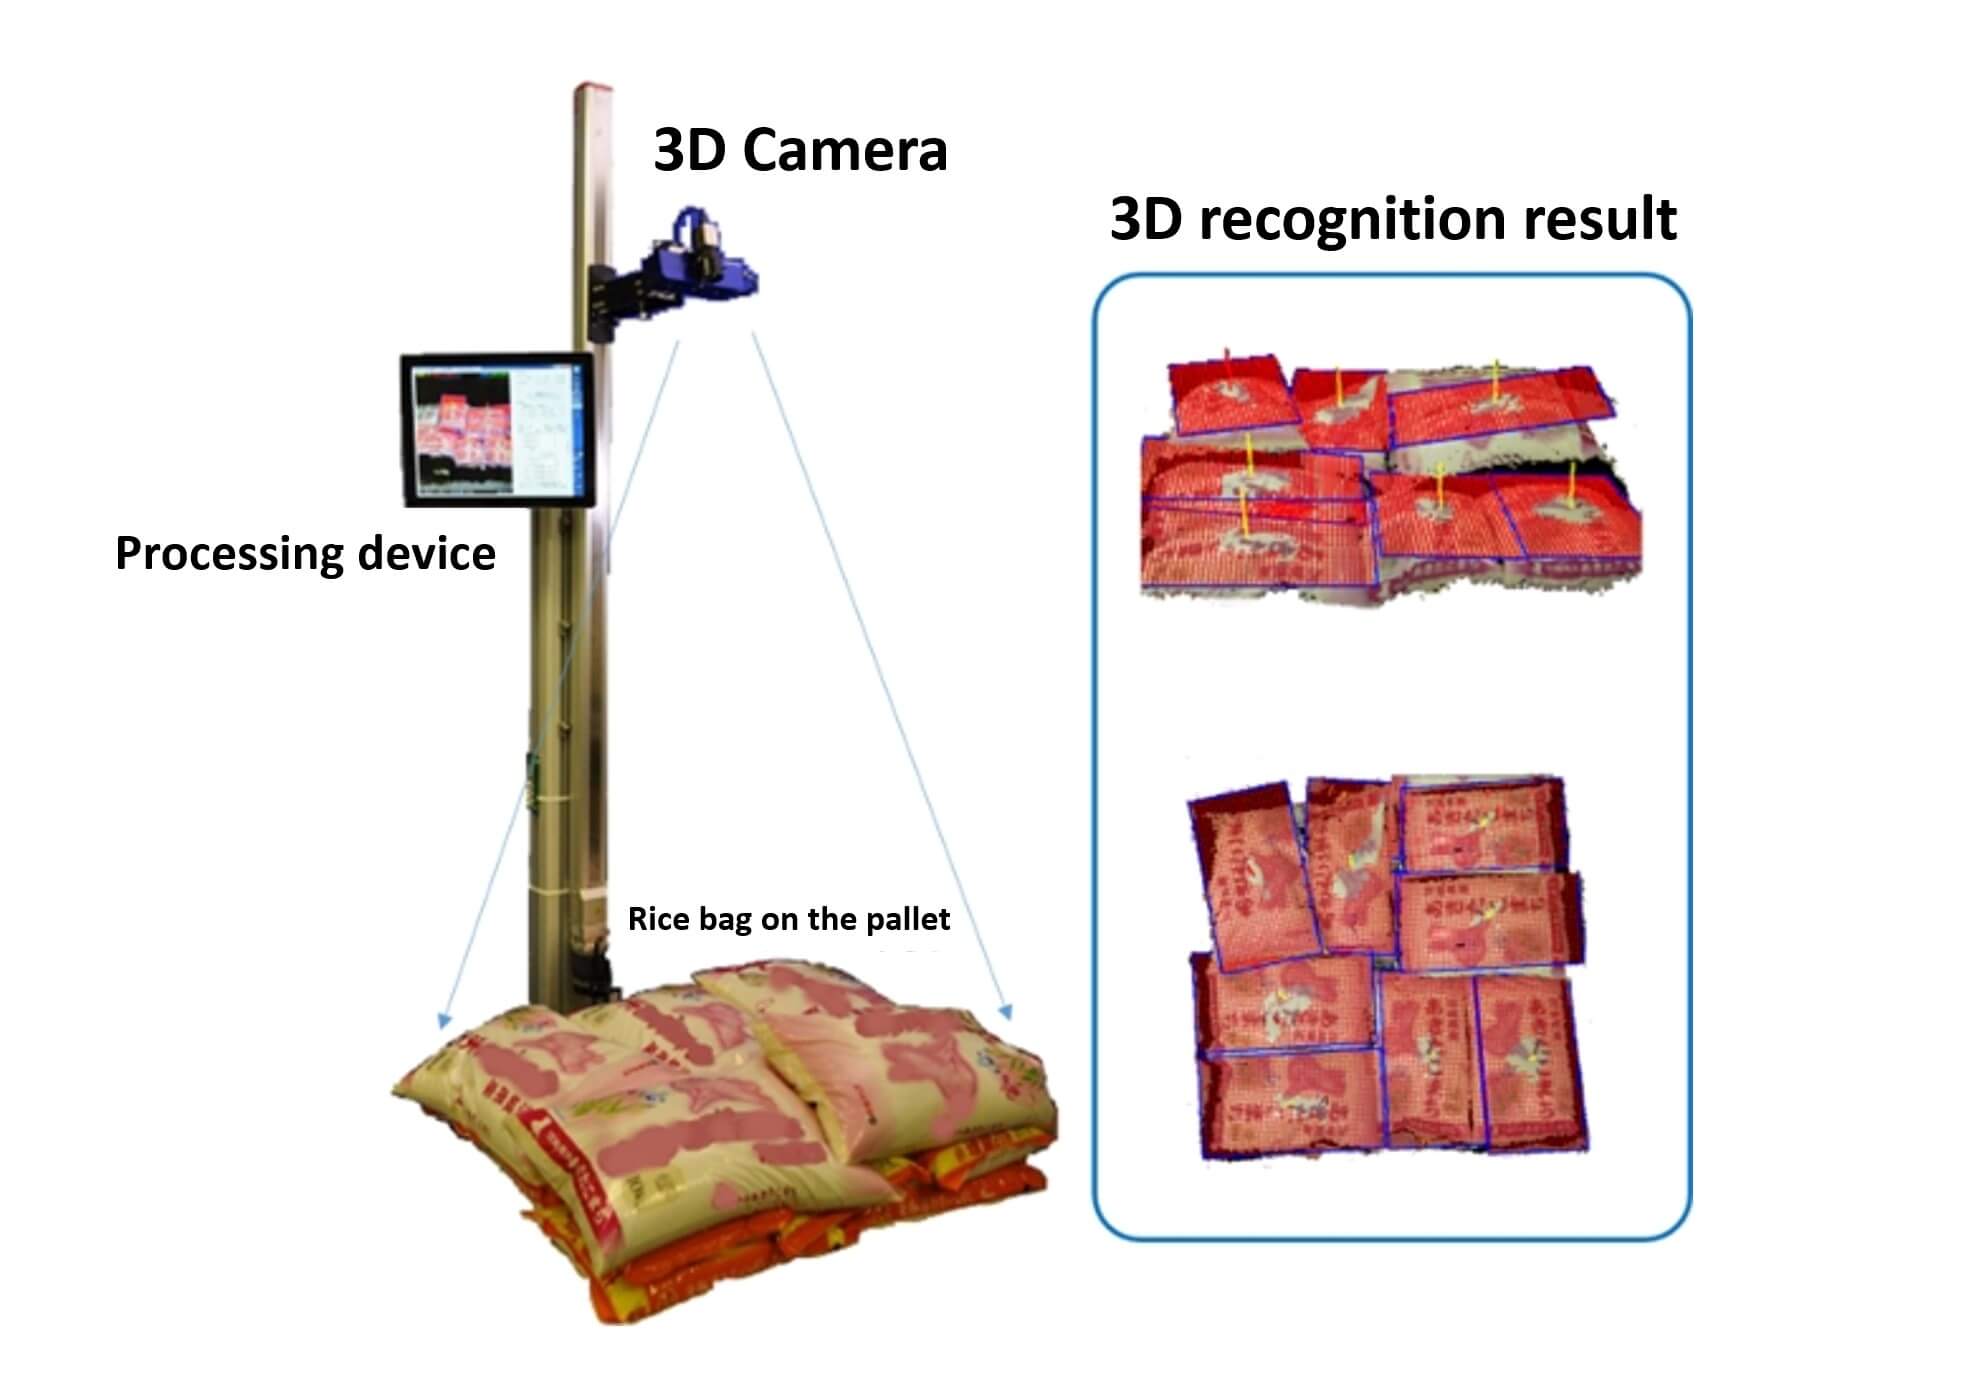 3D recognition result